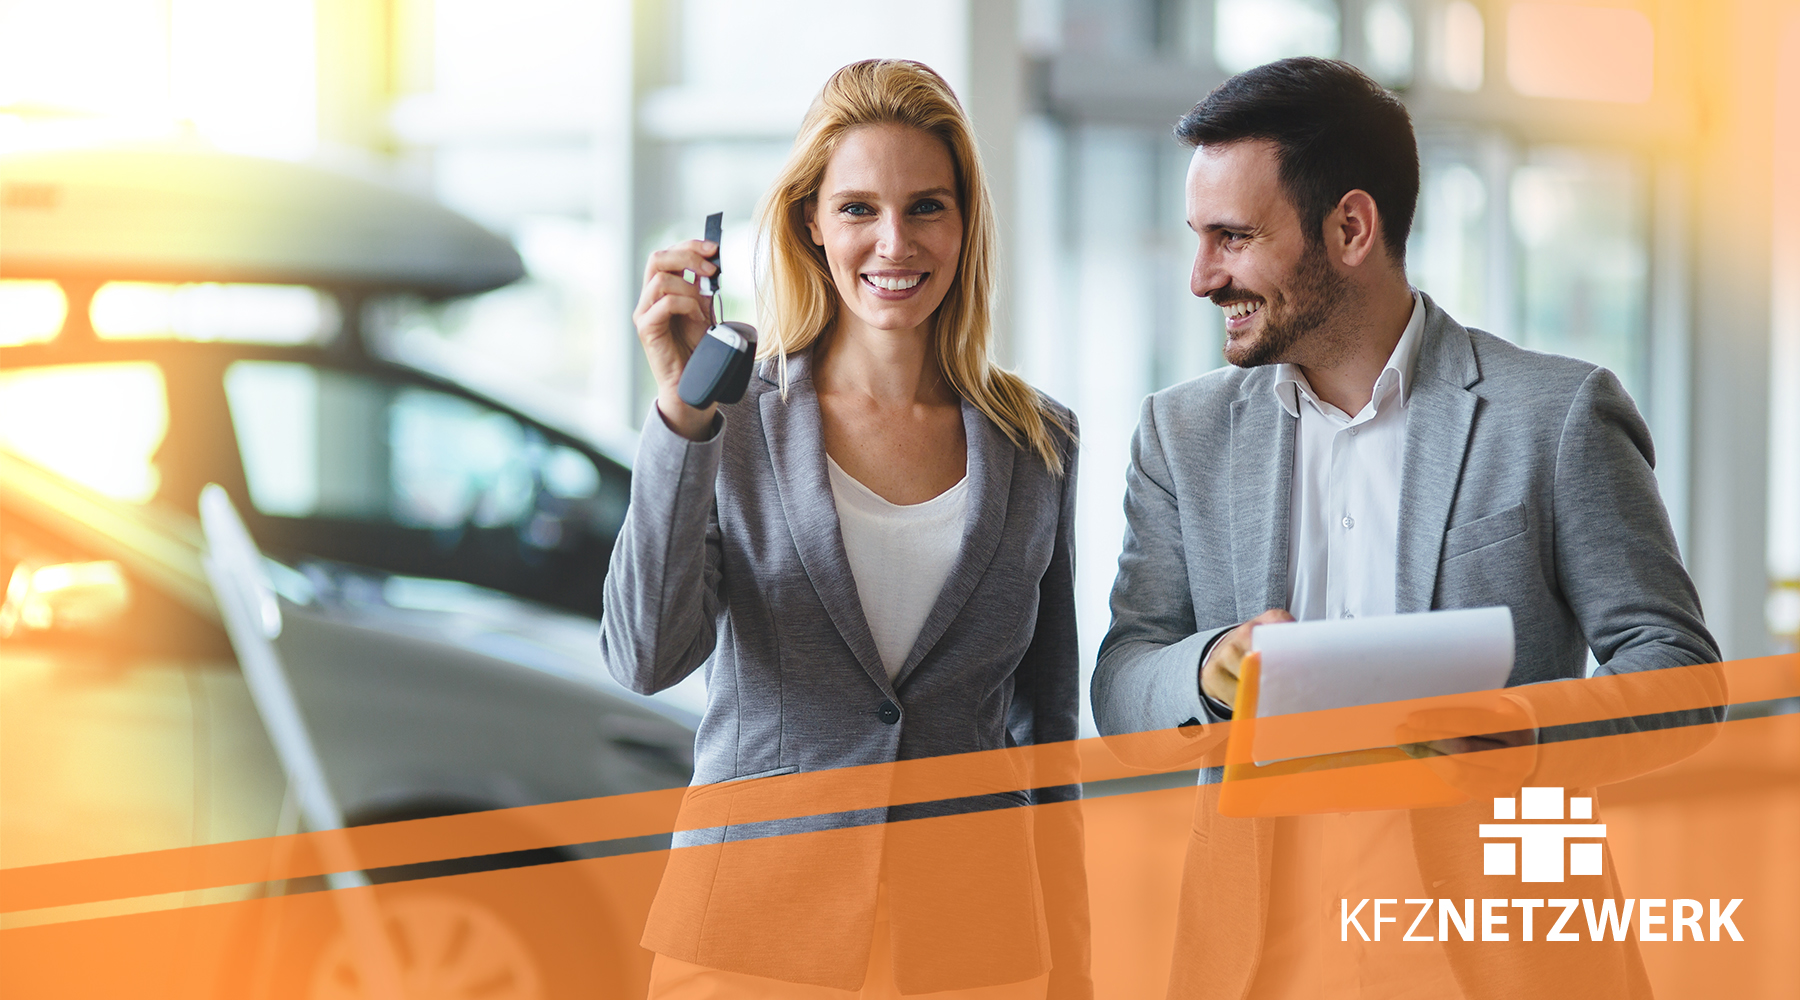 Kfz-Serviceberater übergibt Autoschlüssel un Kundin in einer Autogalerie. Zu Sehen ist auch auf dem Bild das Logo von KFZ-NETZWERK